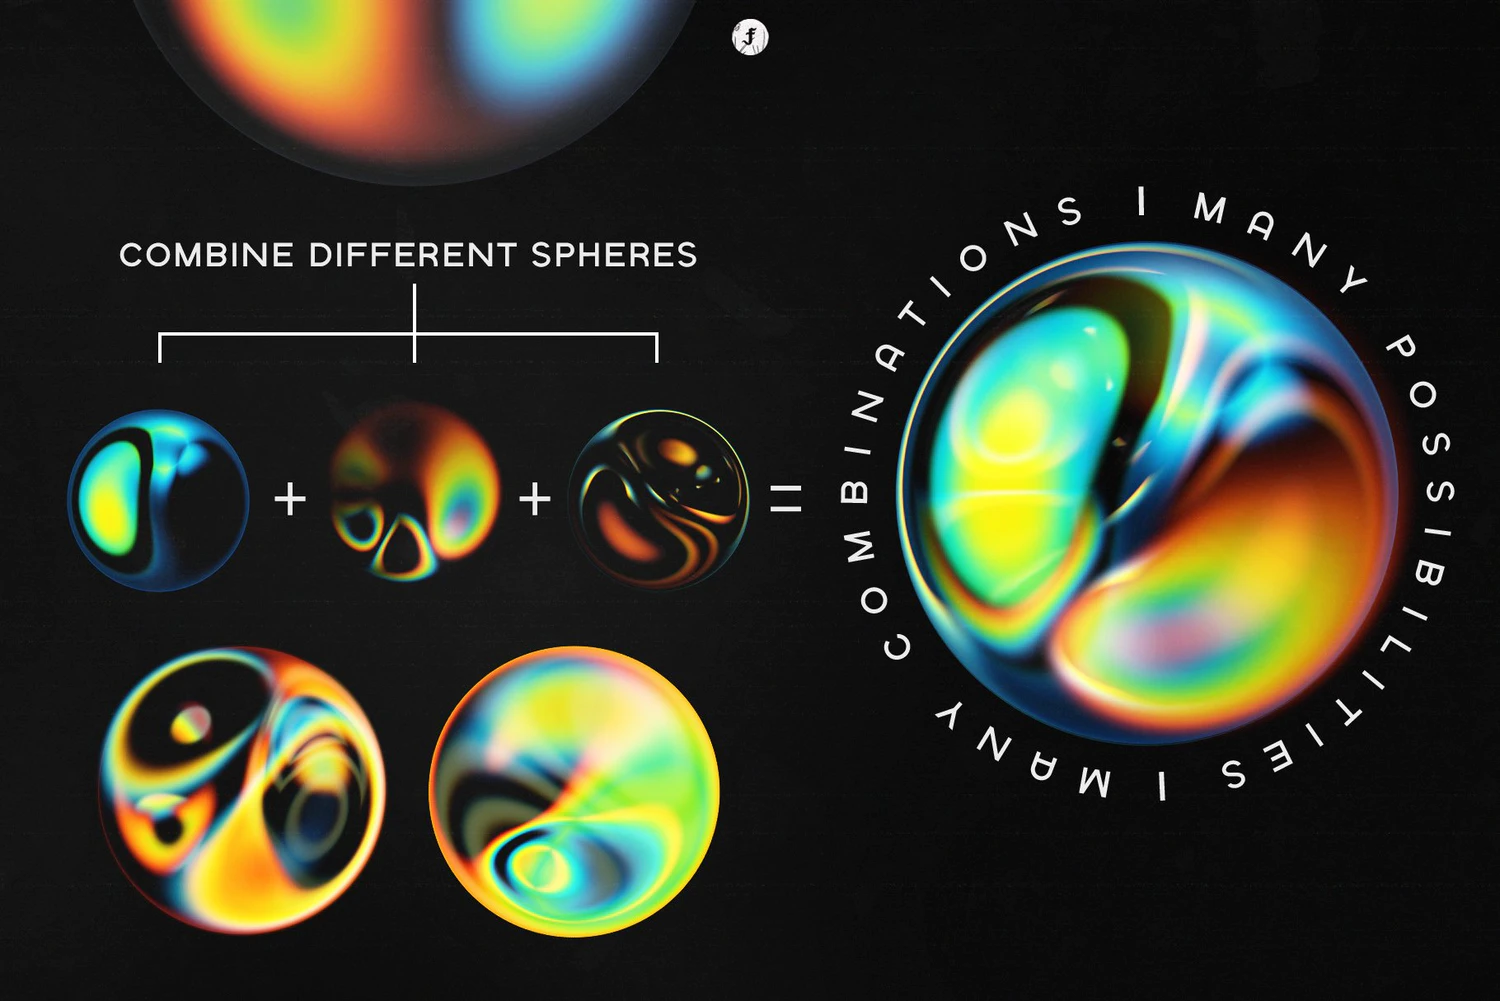 3378 20款虹彩迷幻神秘球体照片叠加png免抠背景图片设计素材 Rainbow Spheres Vol. 1